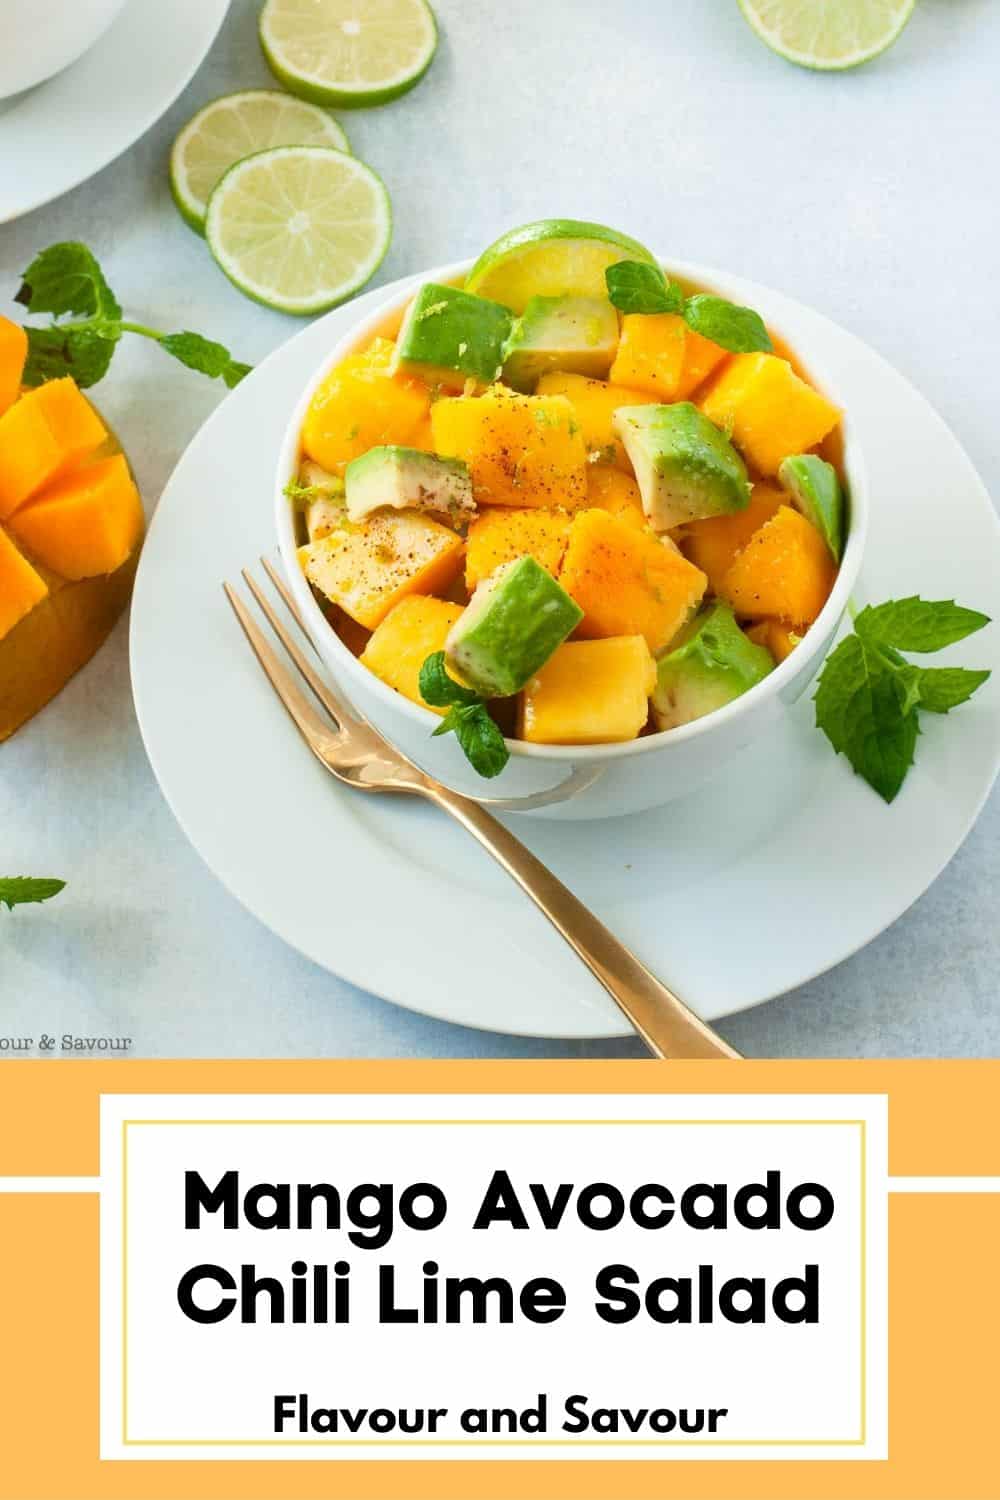 image and text for mango avocado chili lime salad.